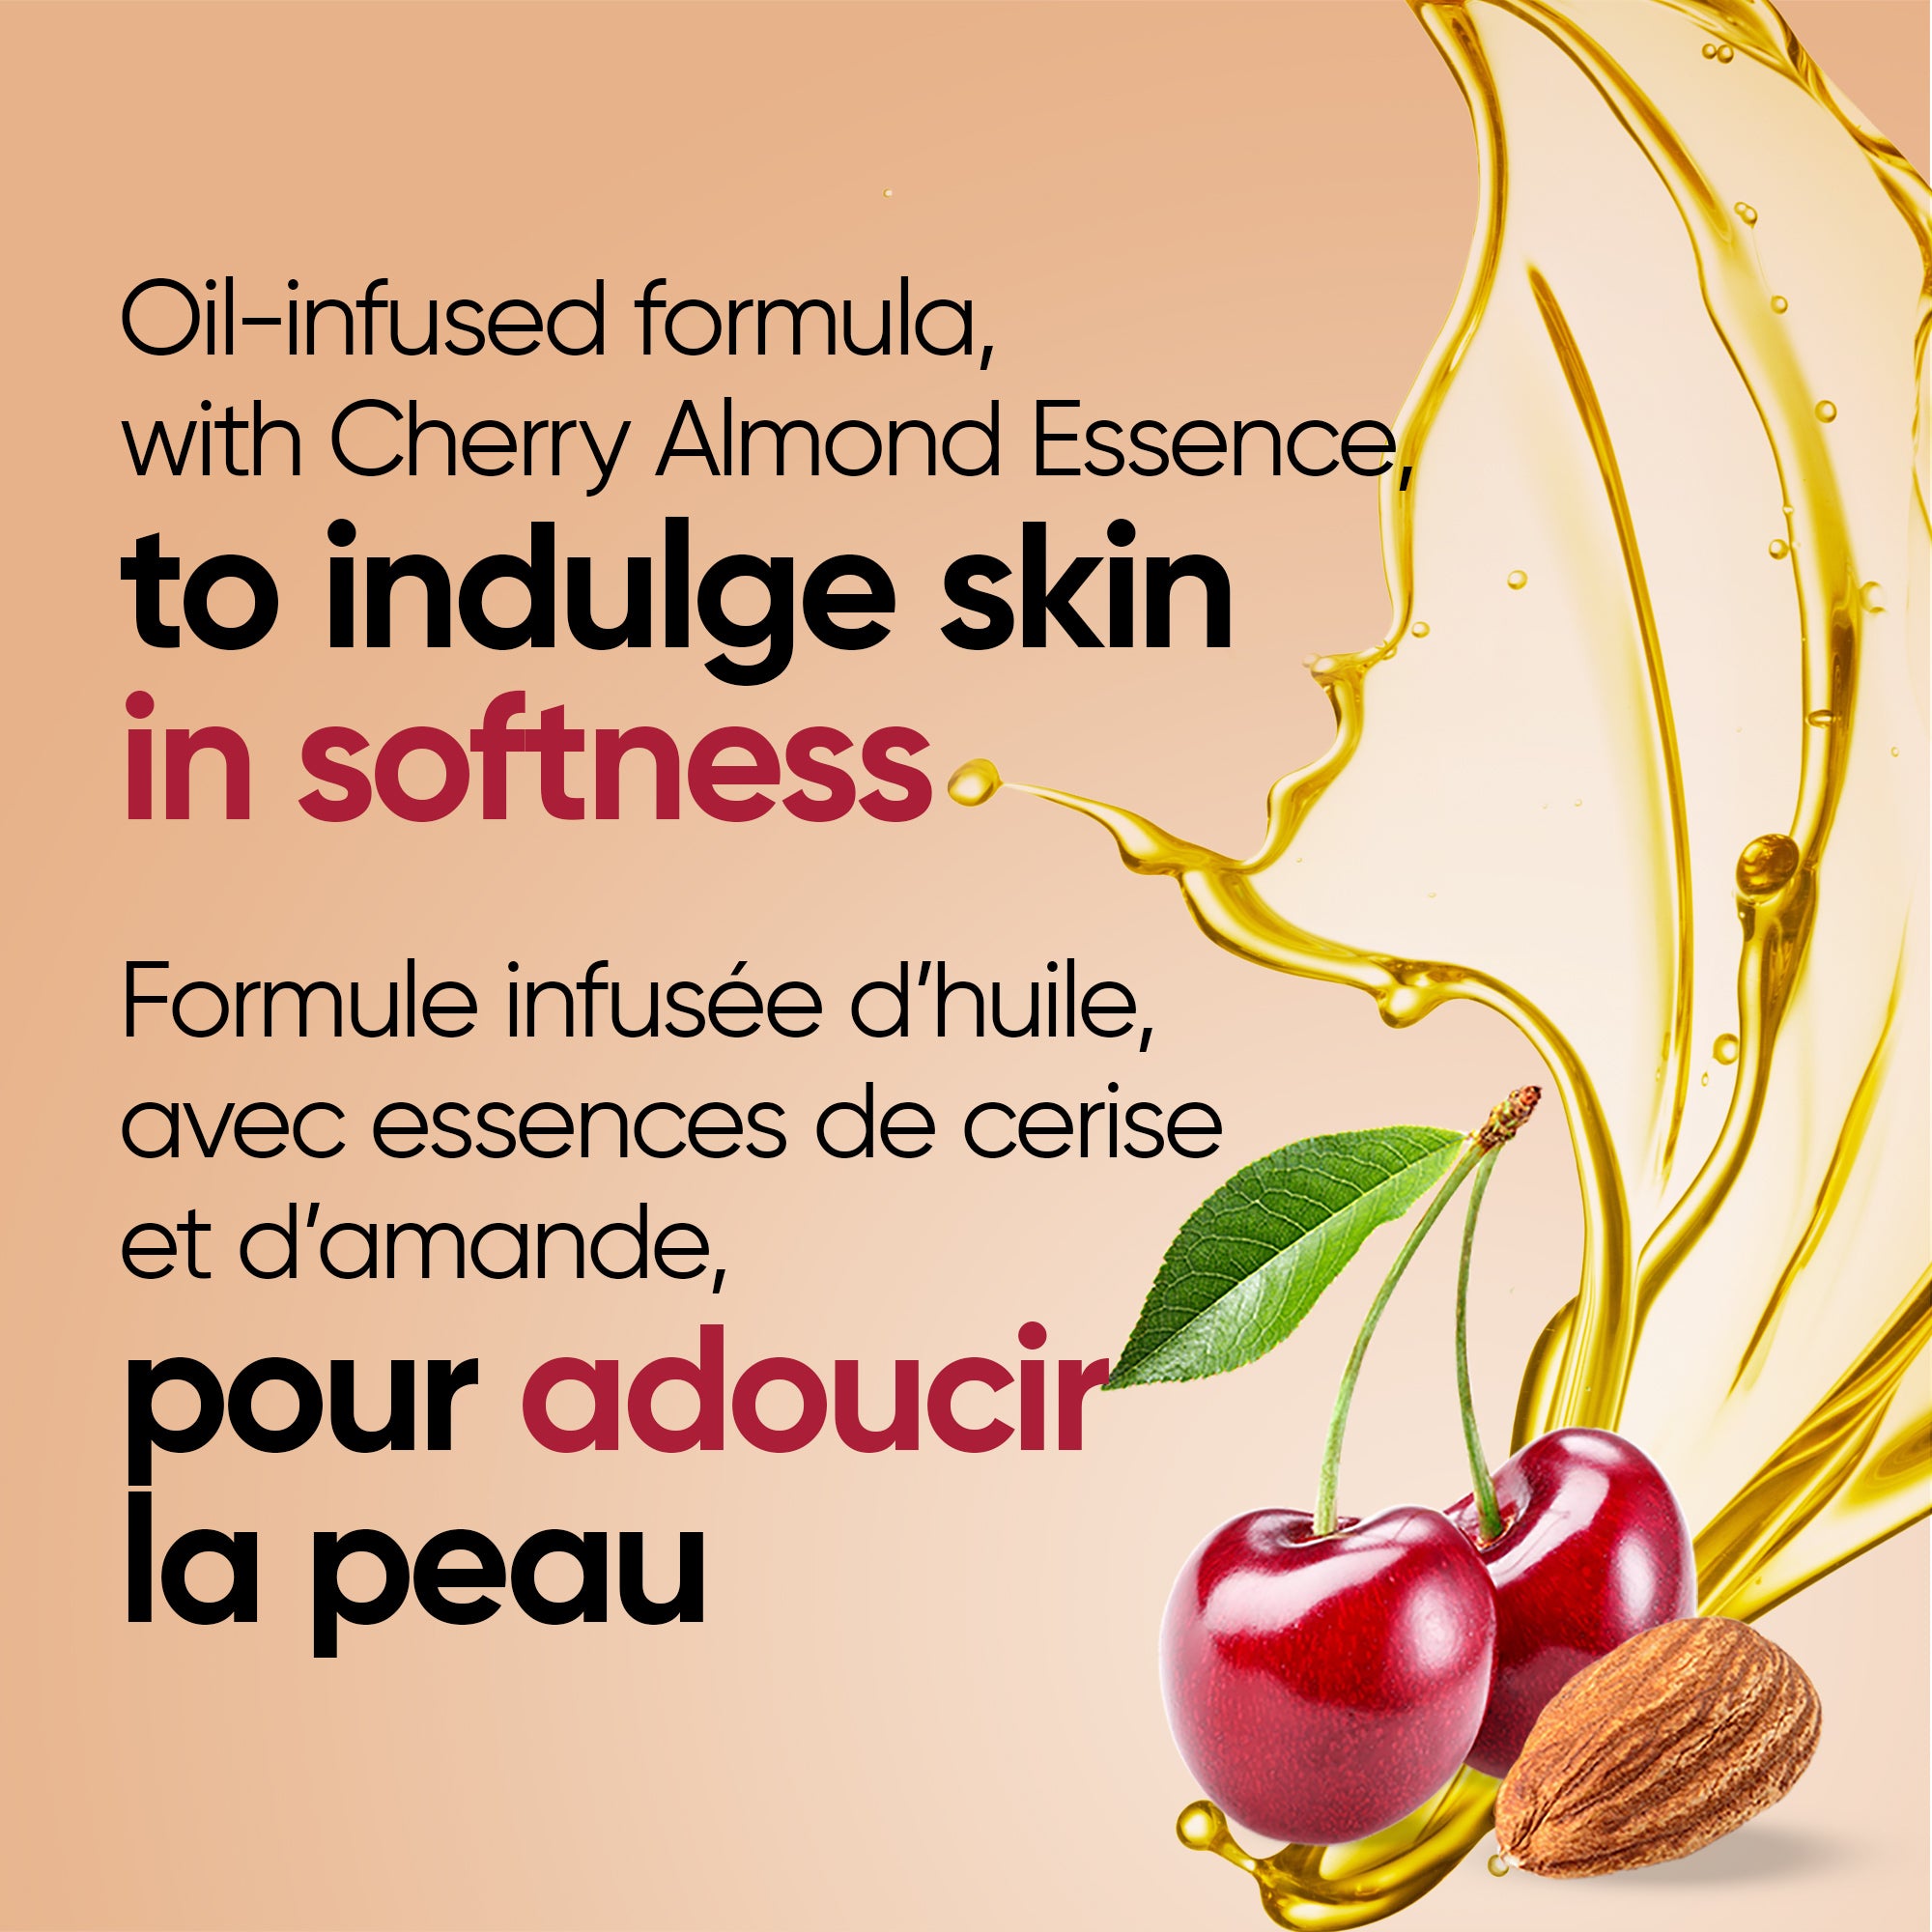 English: Oil-infused formula, with Cherry Almond essence, to indulge skin in softness Français: Enrichi d’huile, avec de l’essence de cerise-amande, pour envelopper la peau de douceur